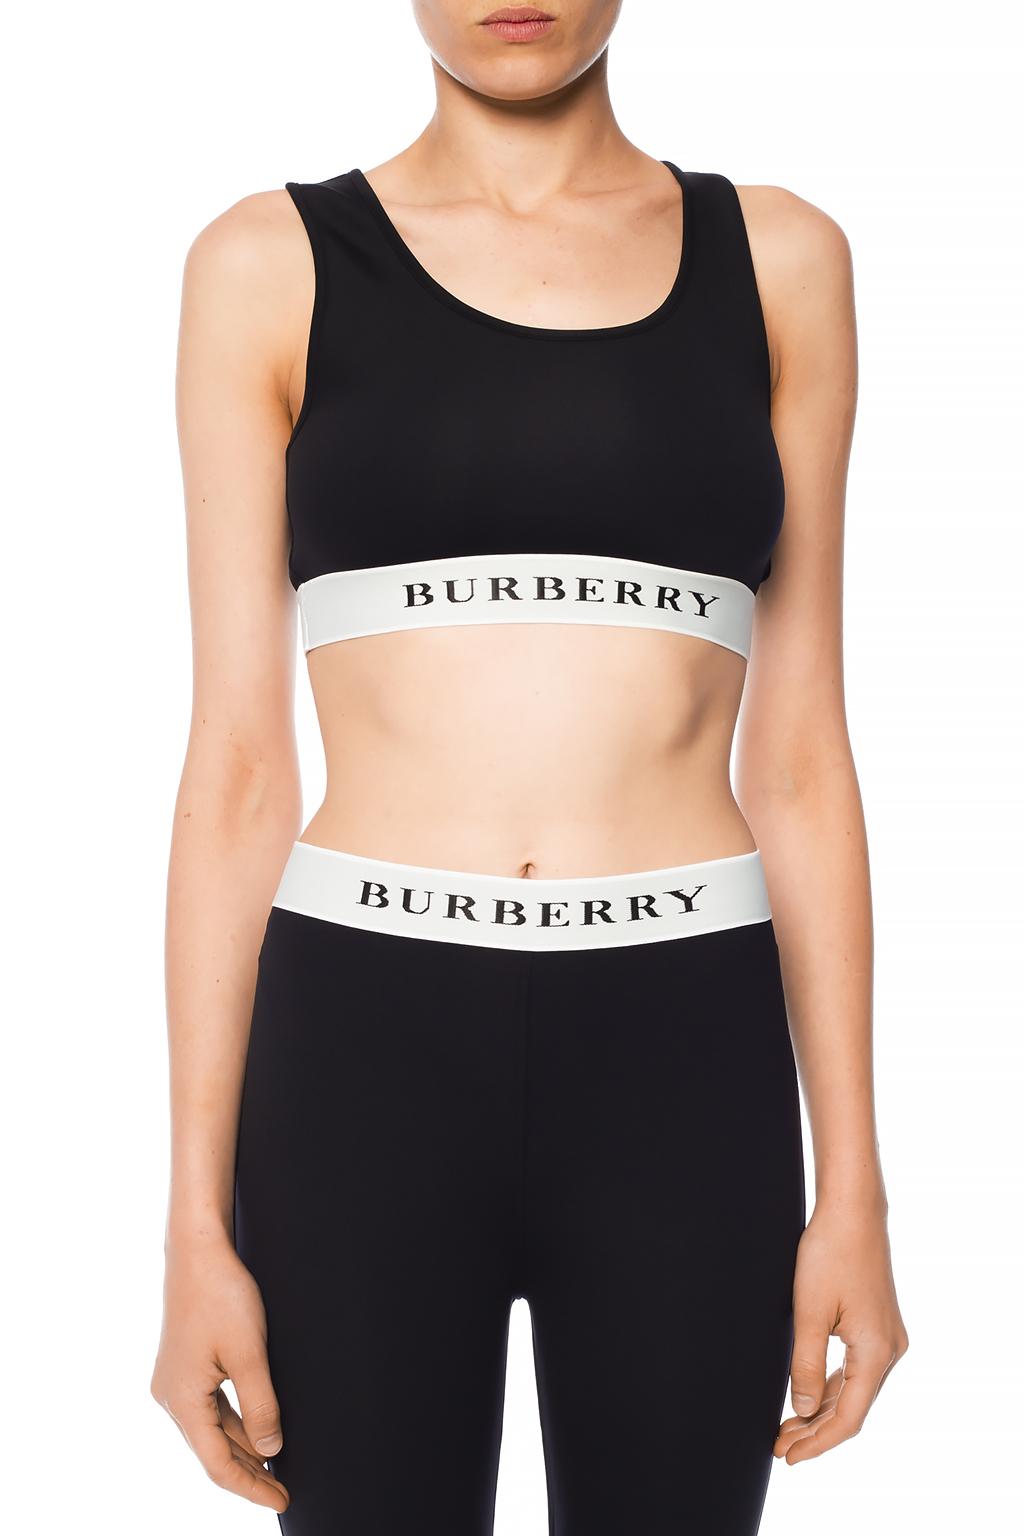 Black Sports bra with logo Burberry - Vitkac Norway